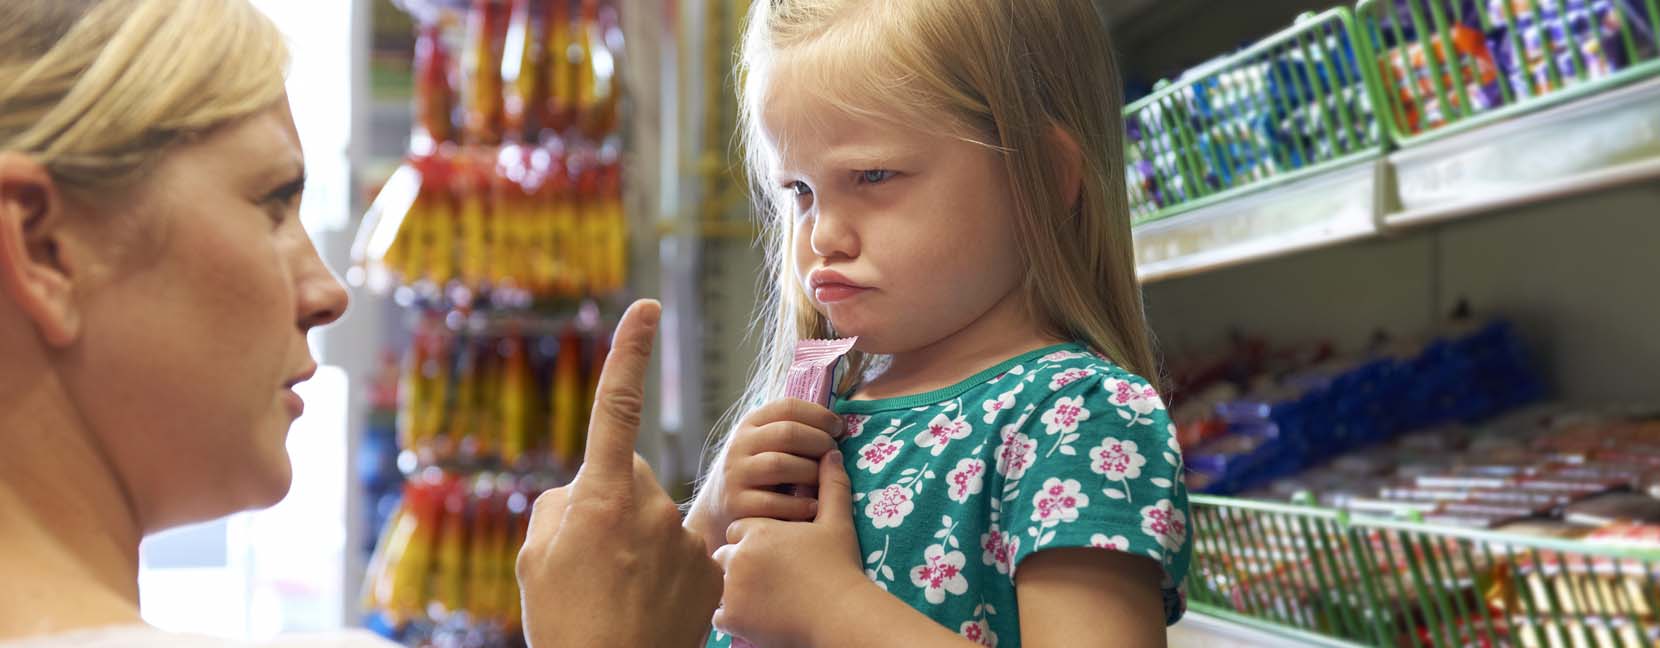 Bambina al supermercato arrabbiata fa i capricci con la mamma: tiene in mano un dolce